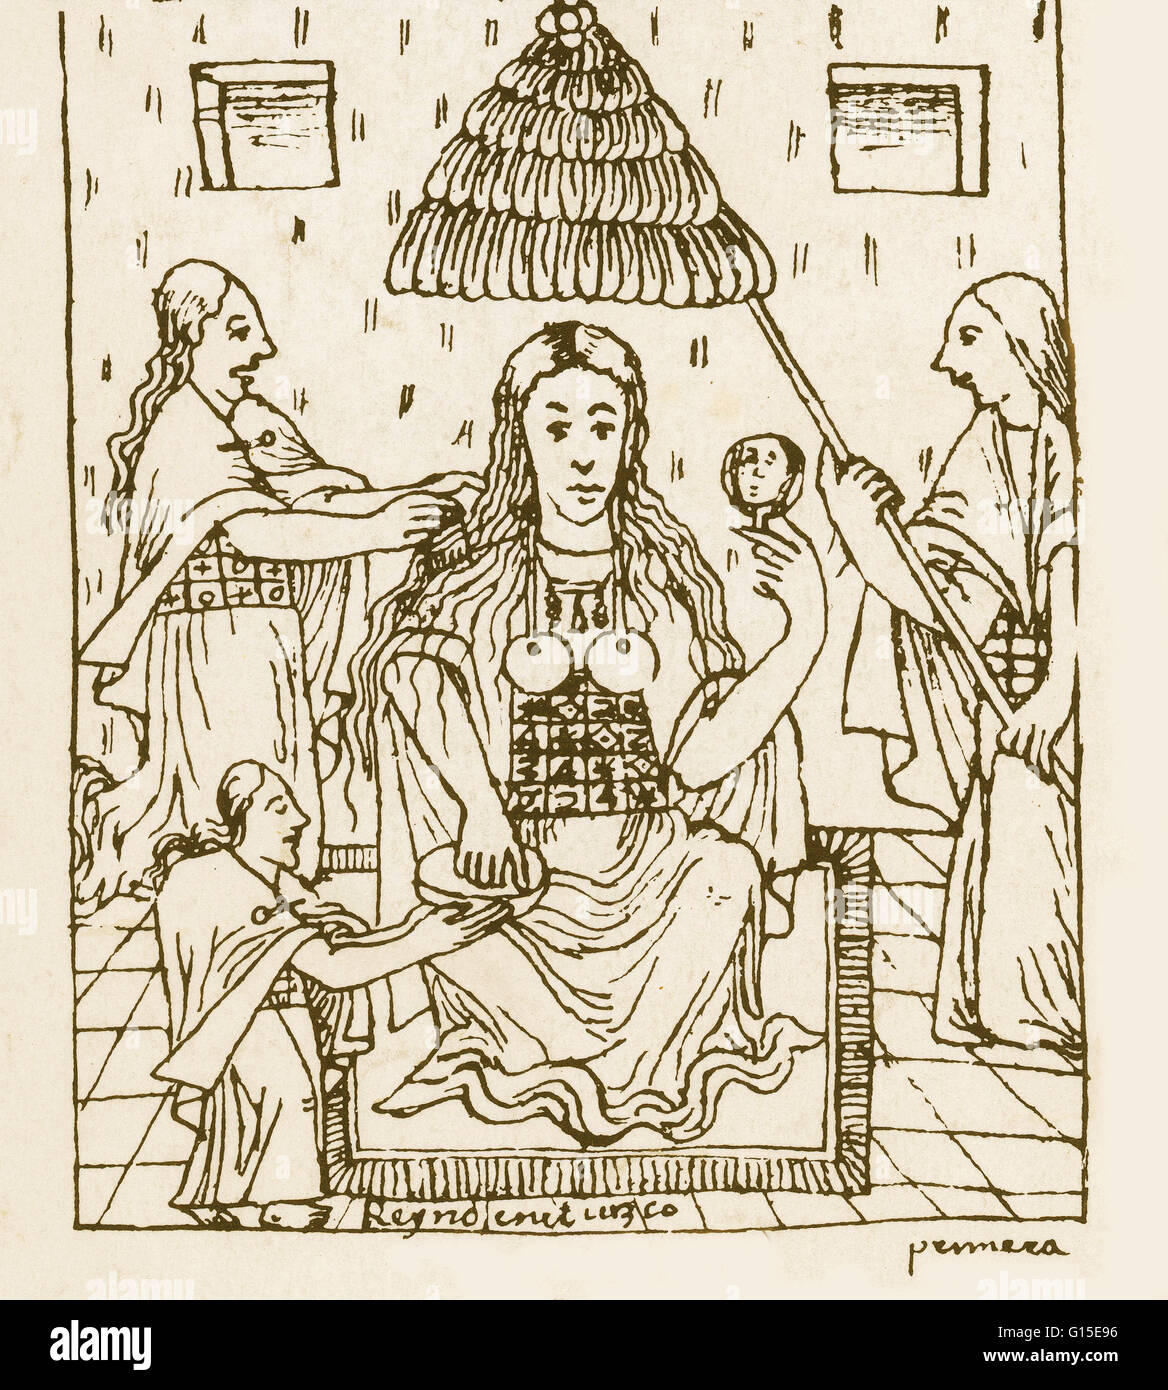 Dal peruviano illustrato codex 'Nueva Coronica y Buen Gobierno" (Nuova corona e la buona governance) inizio del XVII secolo. Mama Coya, imperatrice. Foto Stock